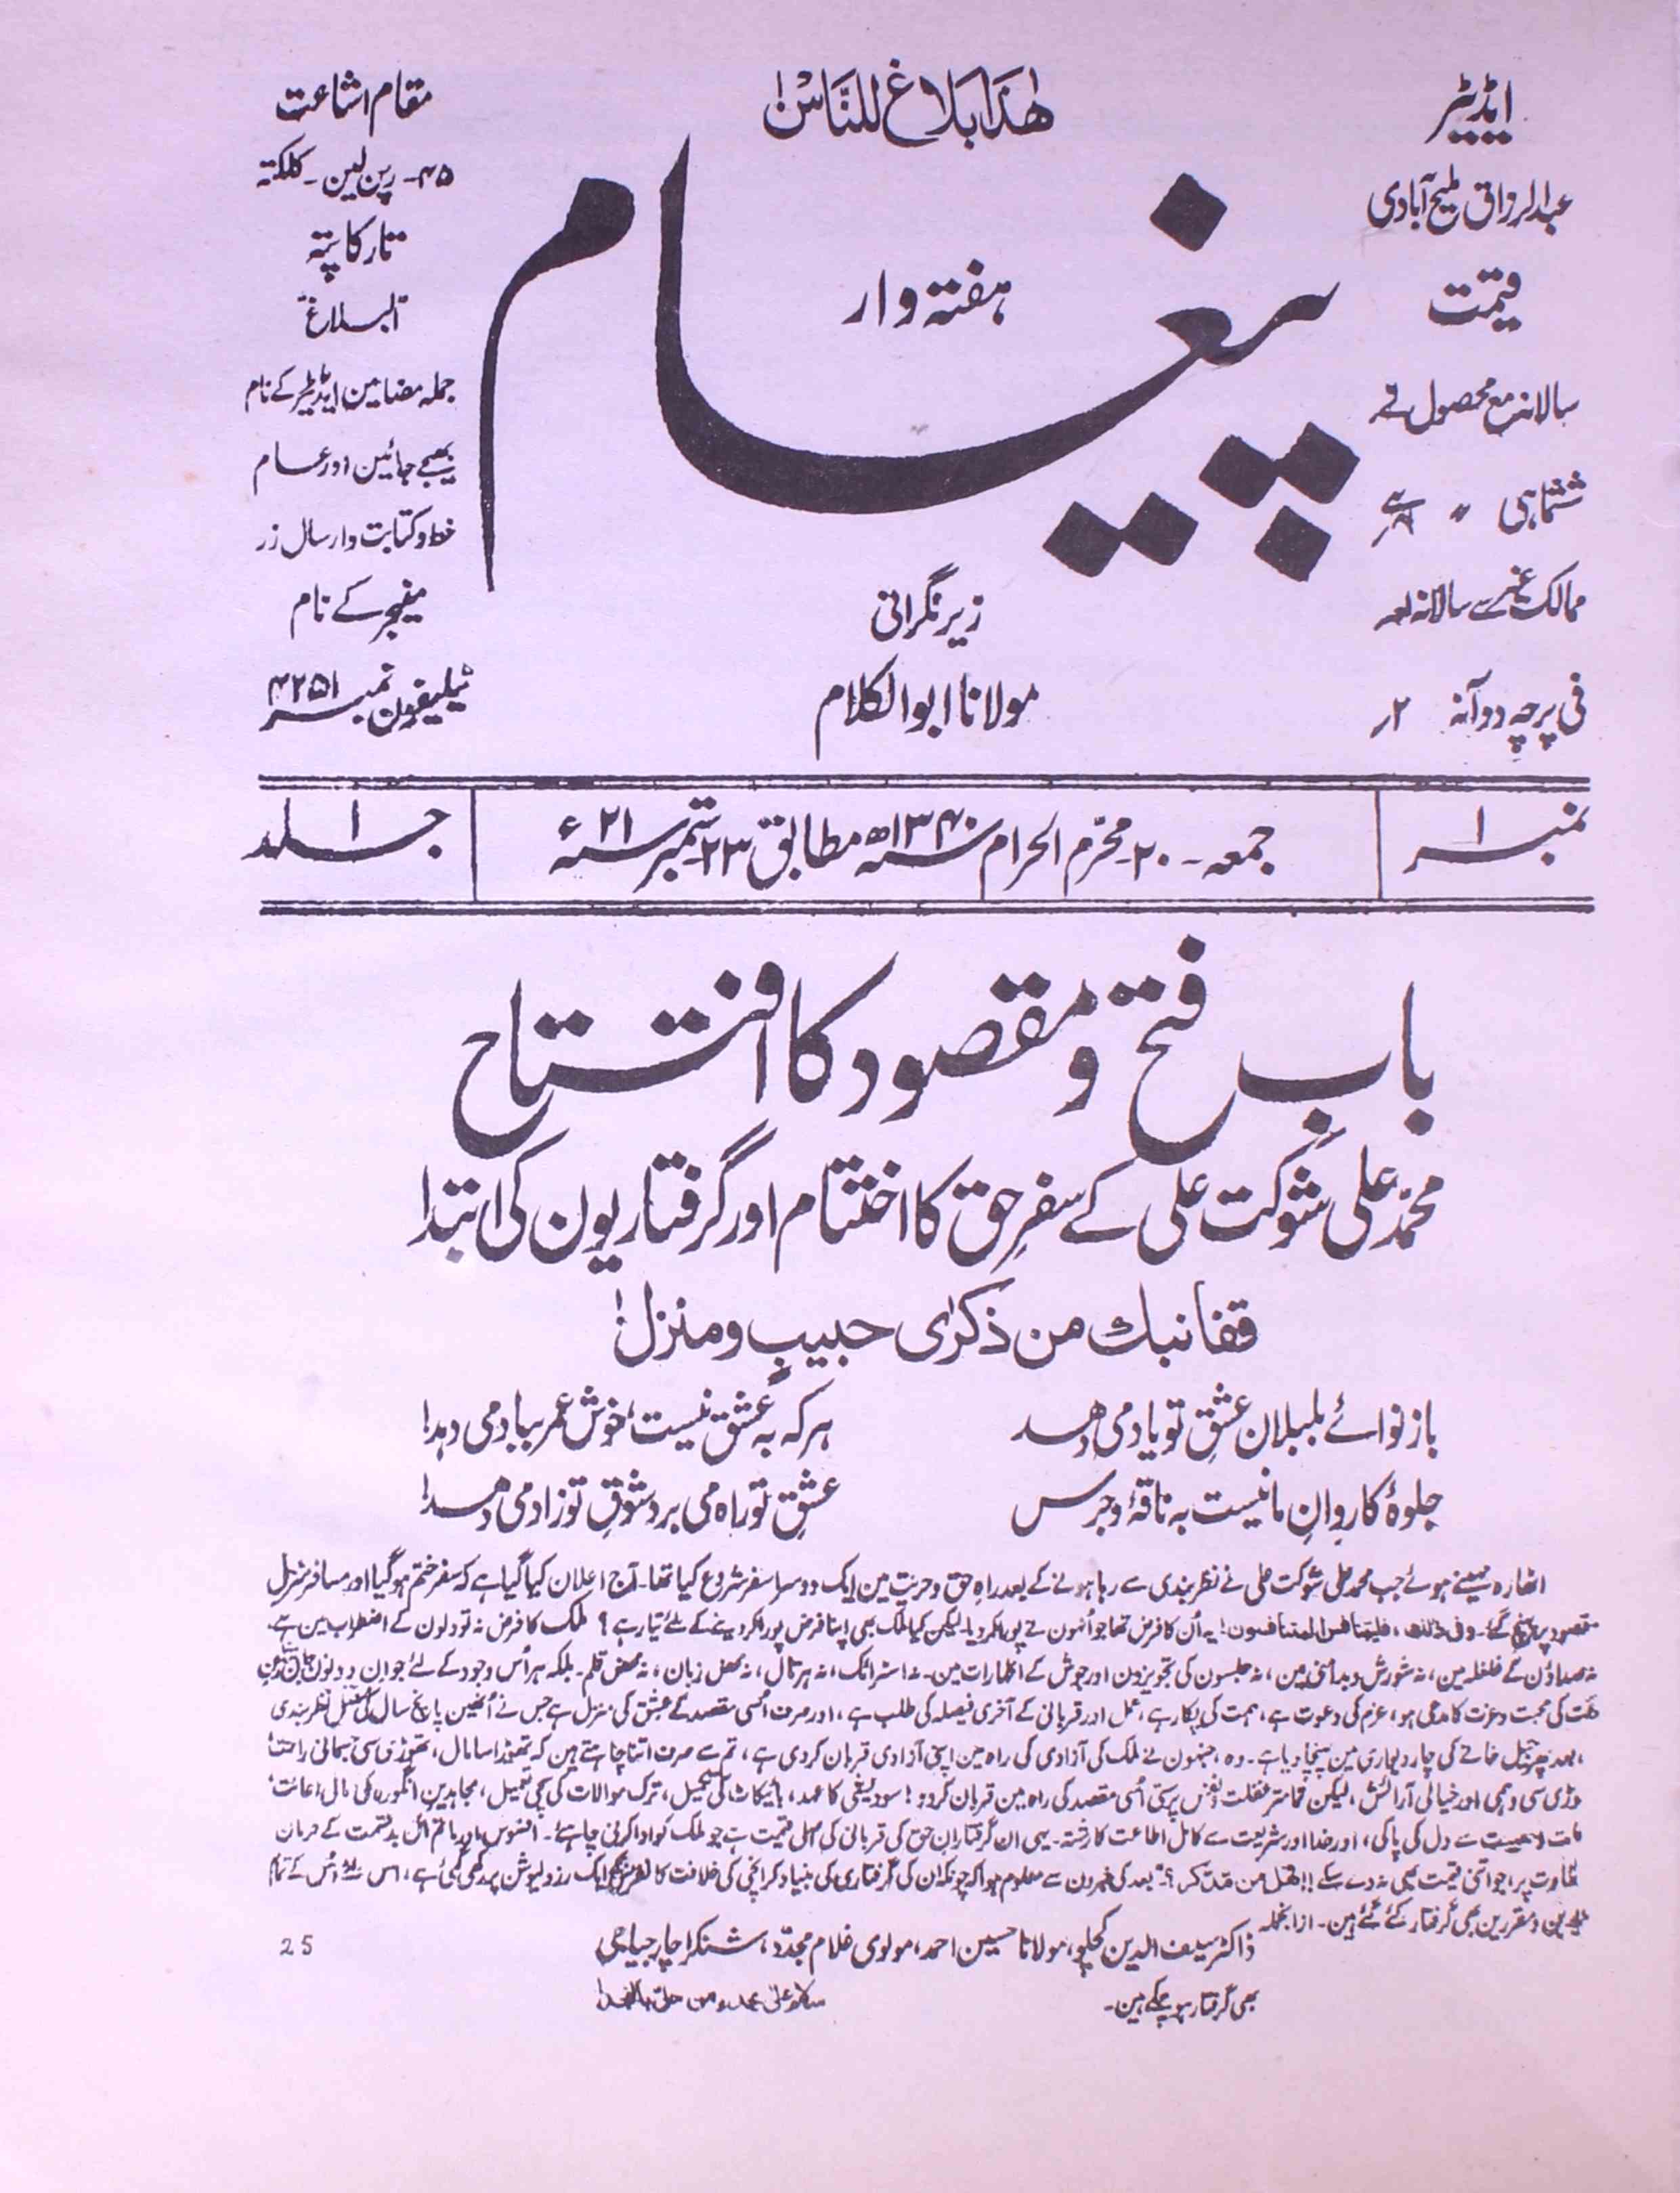 पैग़ाम, कोलकाता- Magazine by अननोन आर्गेनाइजेशन, एफ़. डी. अहमद मिर्ज़ा, फ़ज़लुद्दीन अहमद मिर्ज़ा 